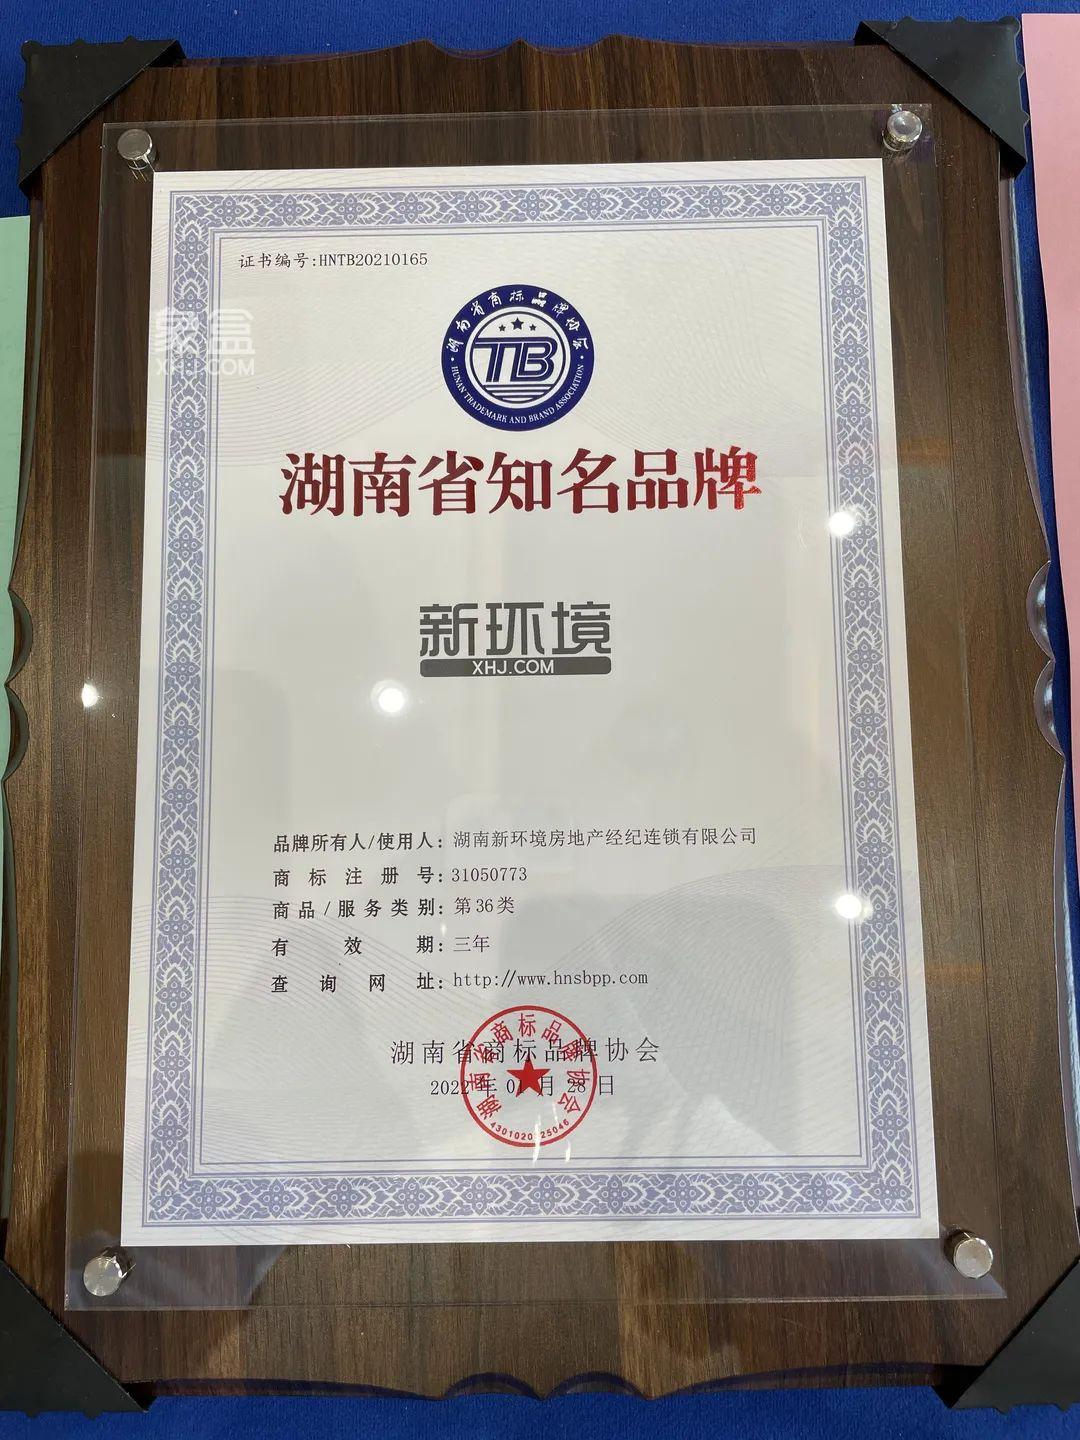 热烈祝贺新环境集团荣获“湖南省知名品牌”称号！